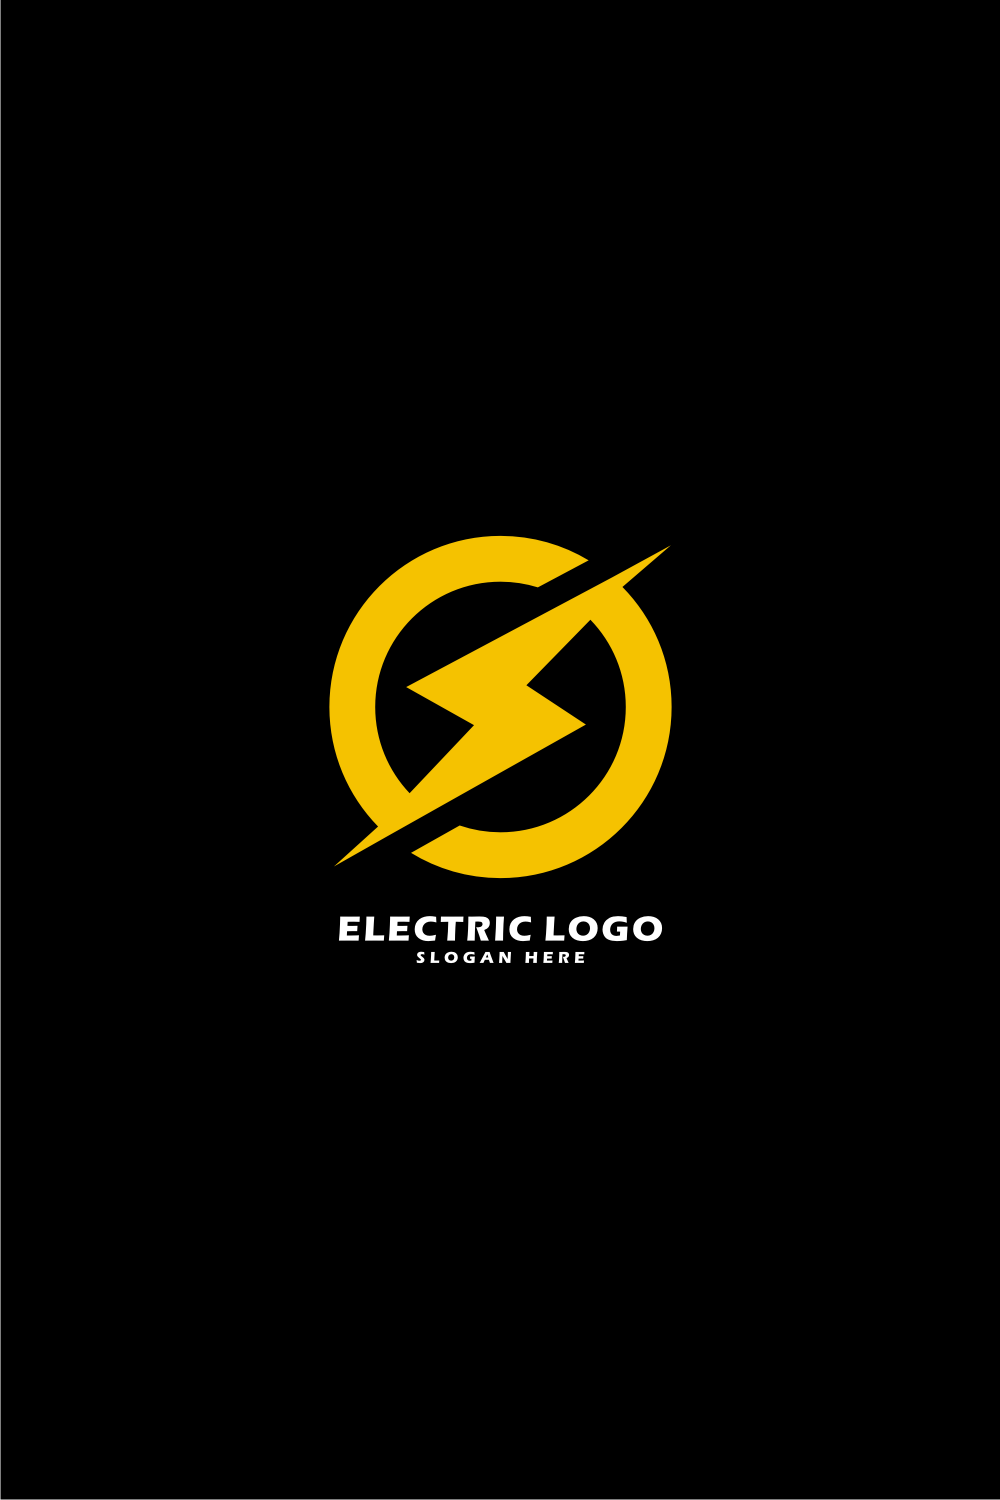 electrical vector logo